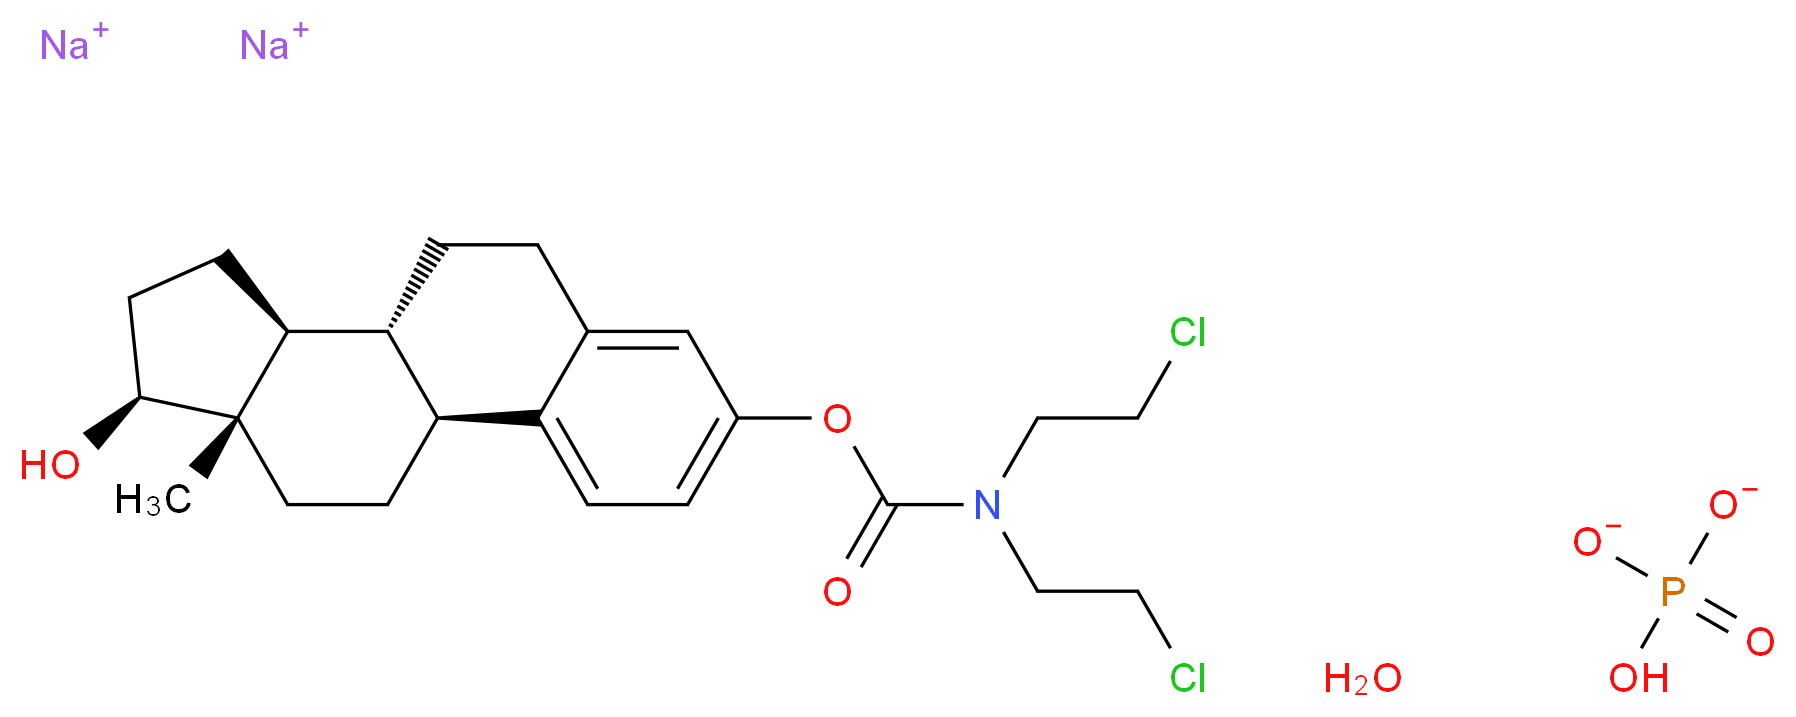 52205-73-9 molecular structure